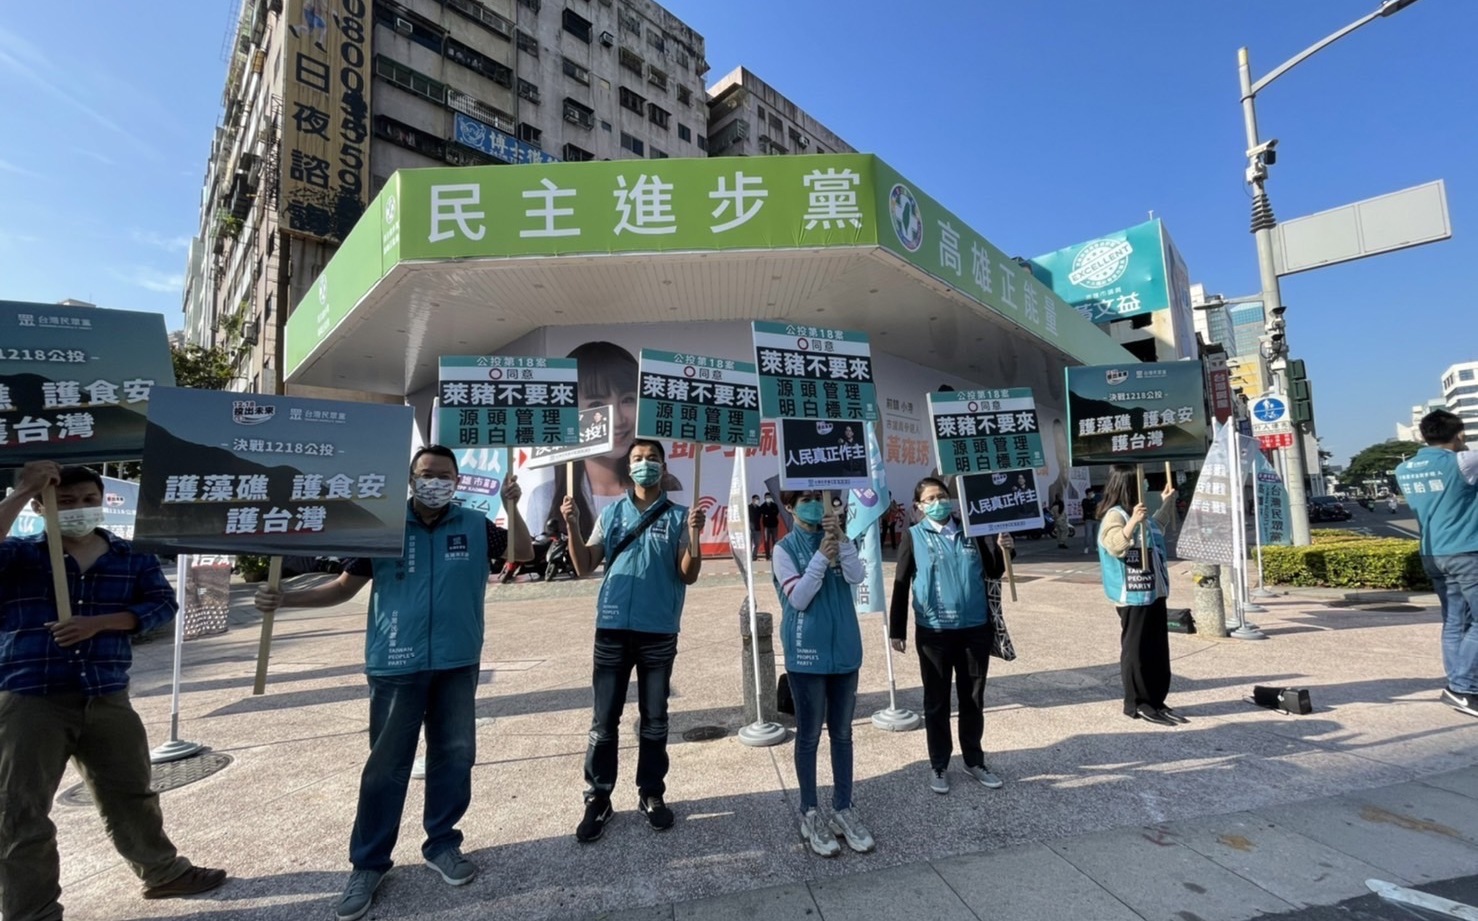 主打「護藻礁、護食安、護台灣」 民眾黨高市黨部上街宣講公投議題 | 政治